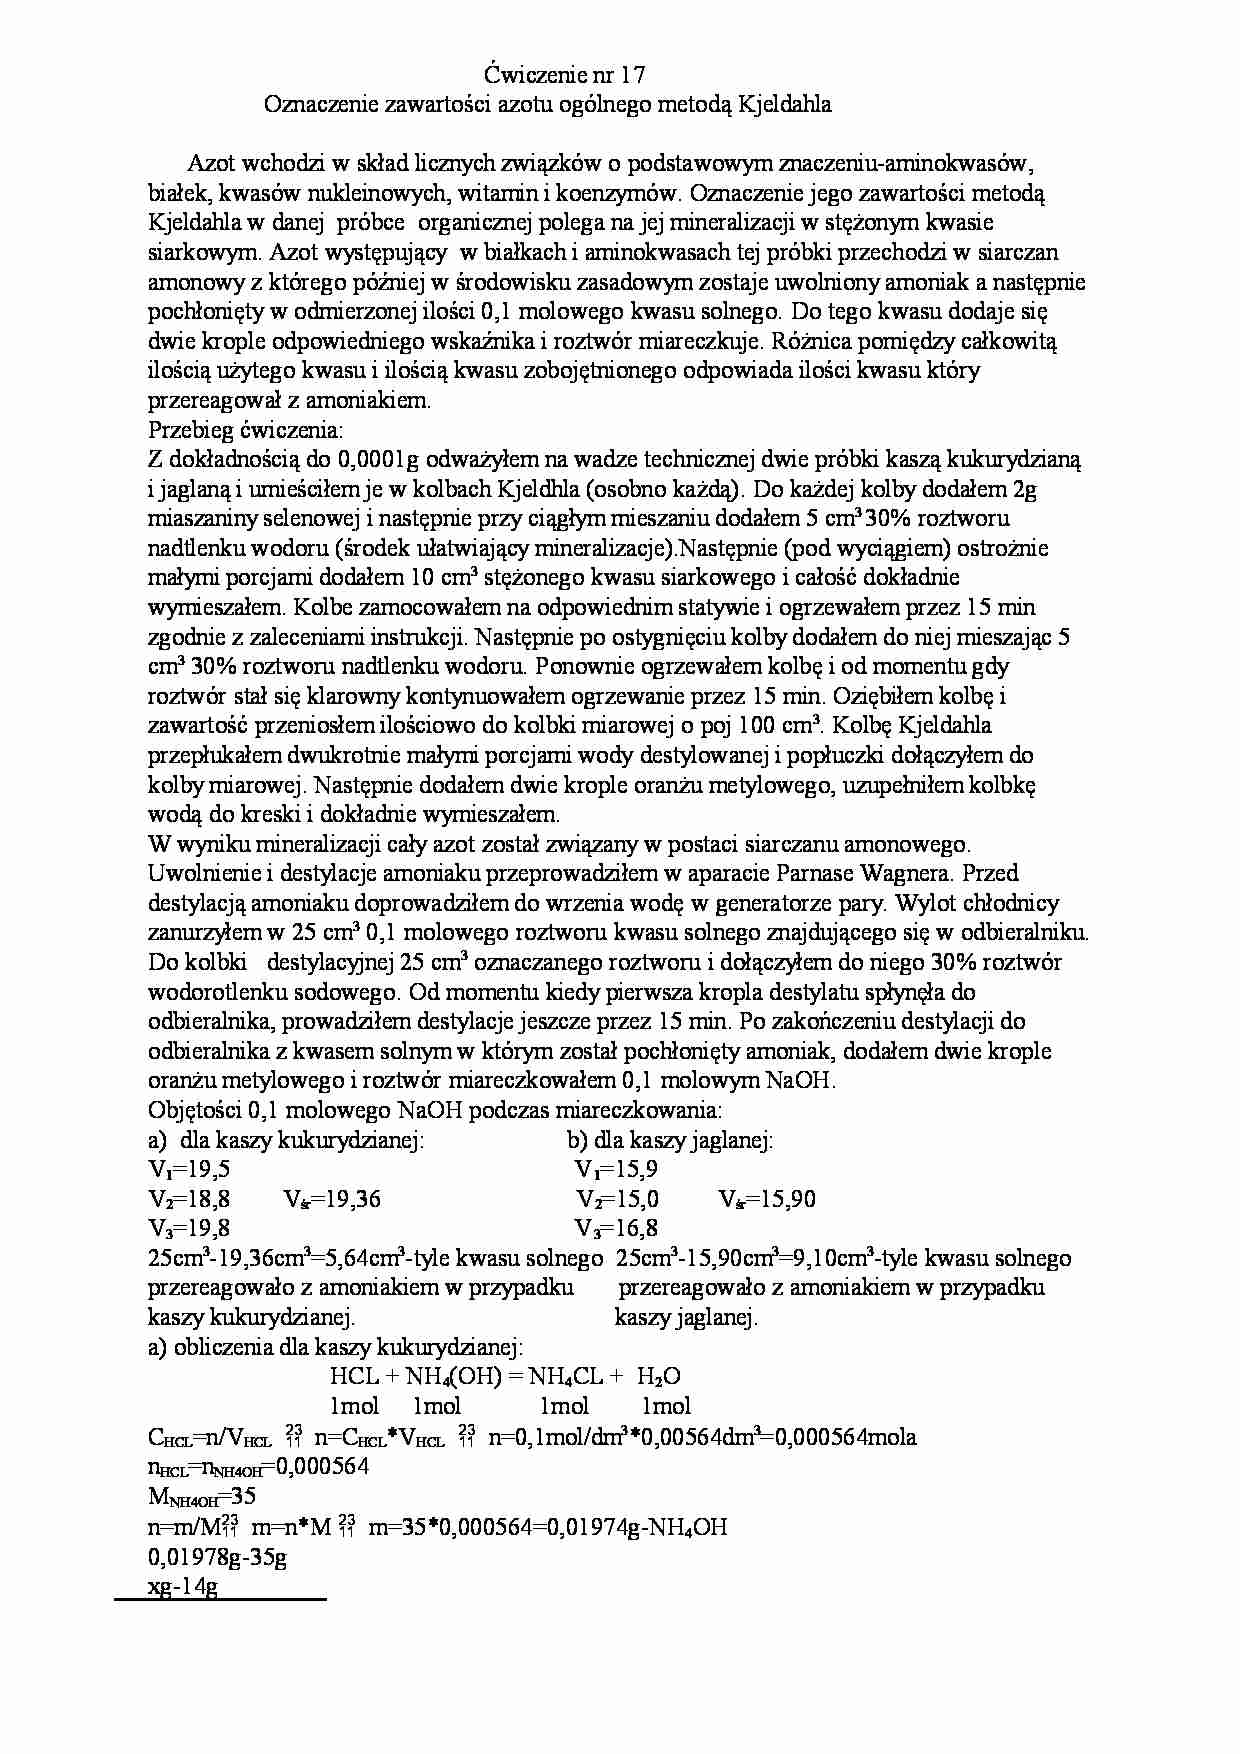 Oznaczenie zawartości azotu metodą Kjeldahla - strona 1